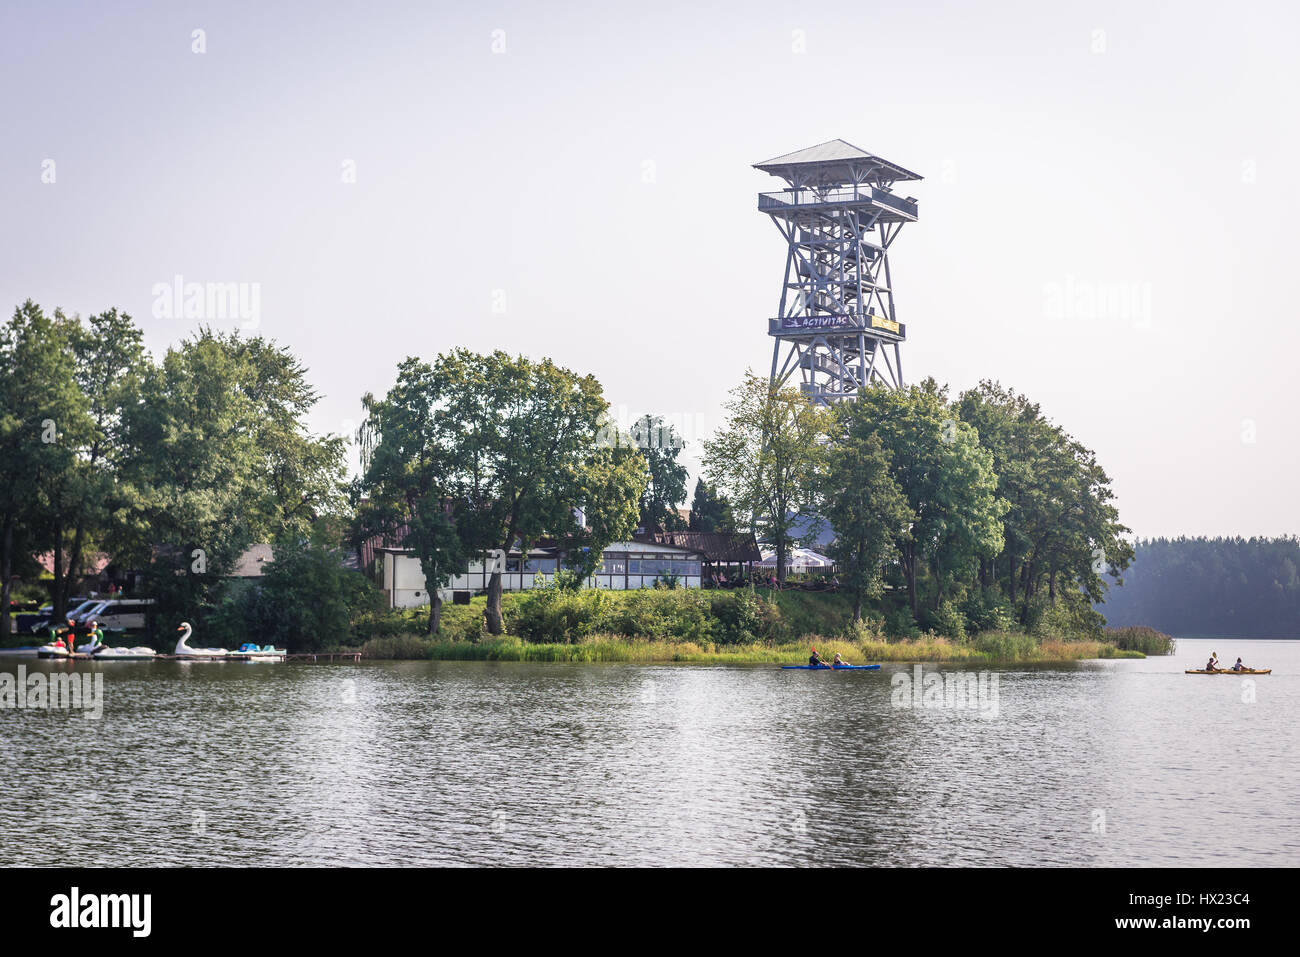 Observation tower for tourists over Jelenie Lake (Deer Lake) in Wdzydze Kiszewskie village of Koscierzyna commune, Kashubia region of Poland Stock Photo